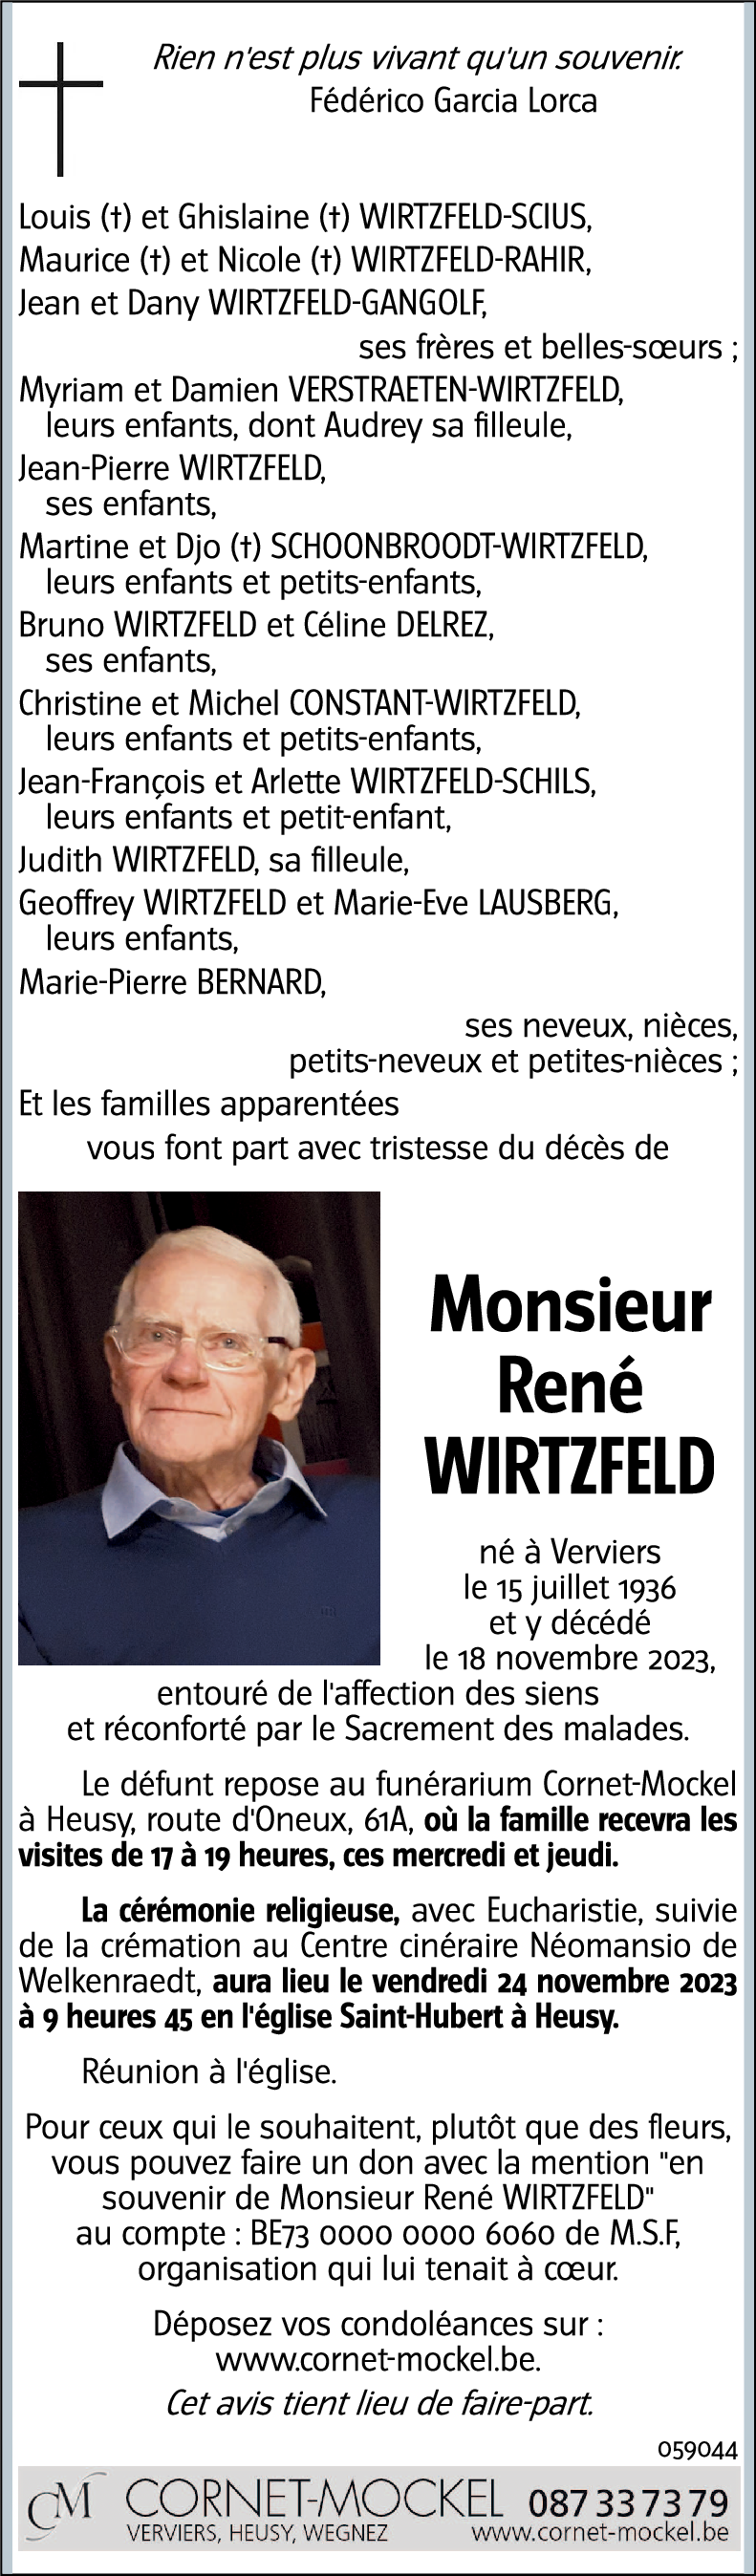 René WIRTZFELD